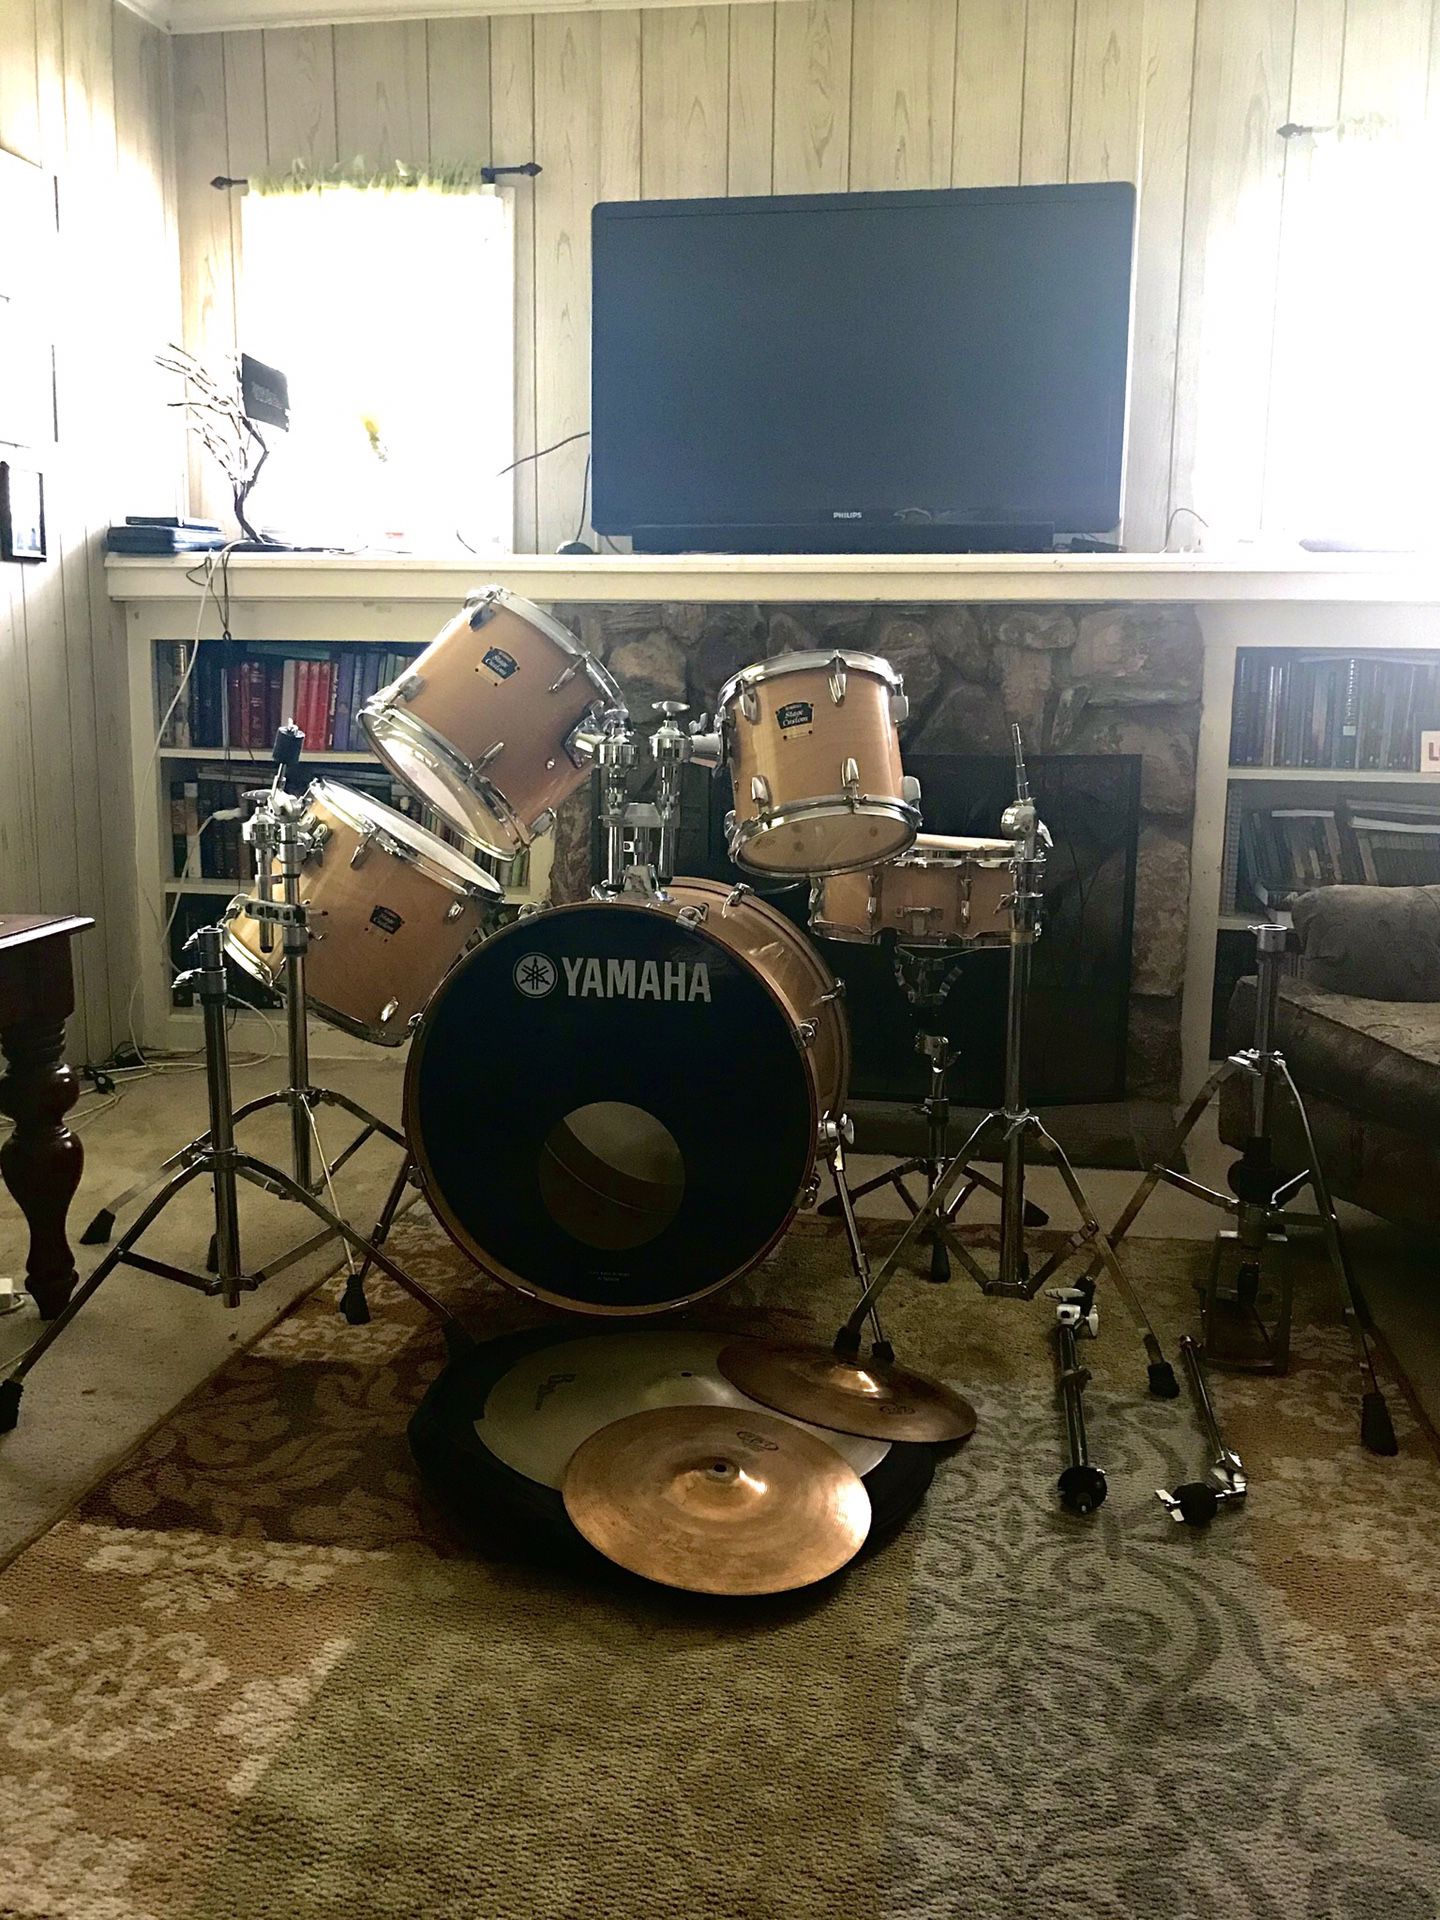 Yamaha wood style drum set